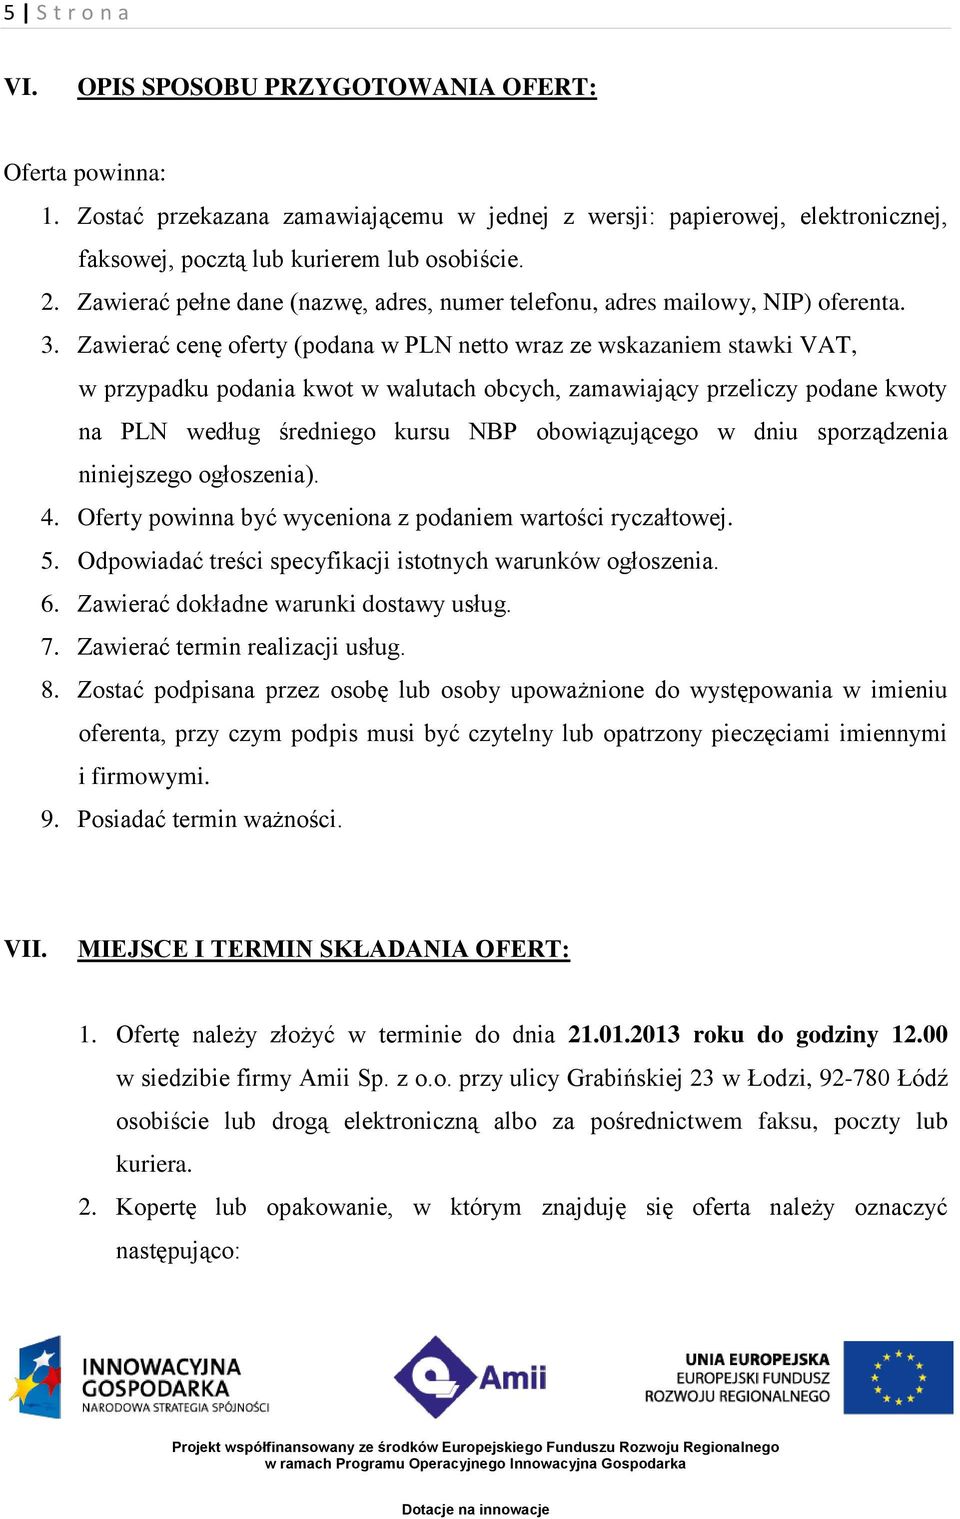 Zawierać cenę oferty (podana w PLN netto wraz ze wskazaniem stawki VAT, w przypadku podania kwot w walutach obcych, zamawiający przeliczy podane kwoty na PLN według średniego kursu NBP obowiązującego